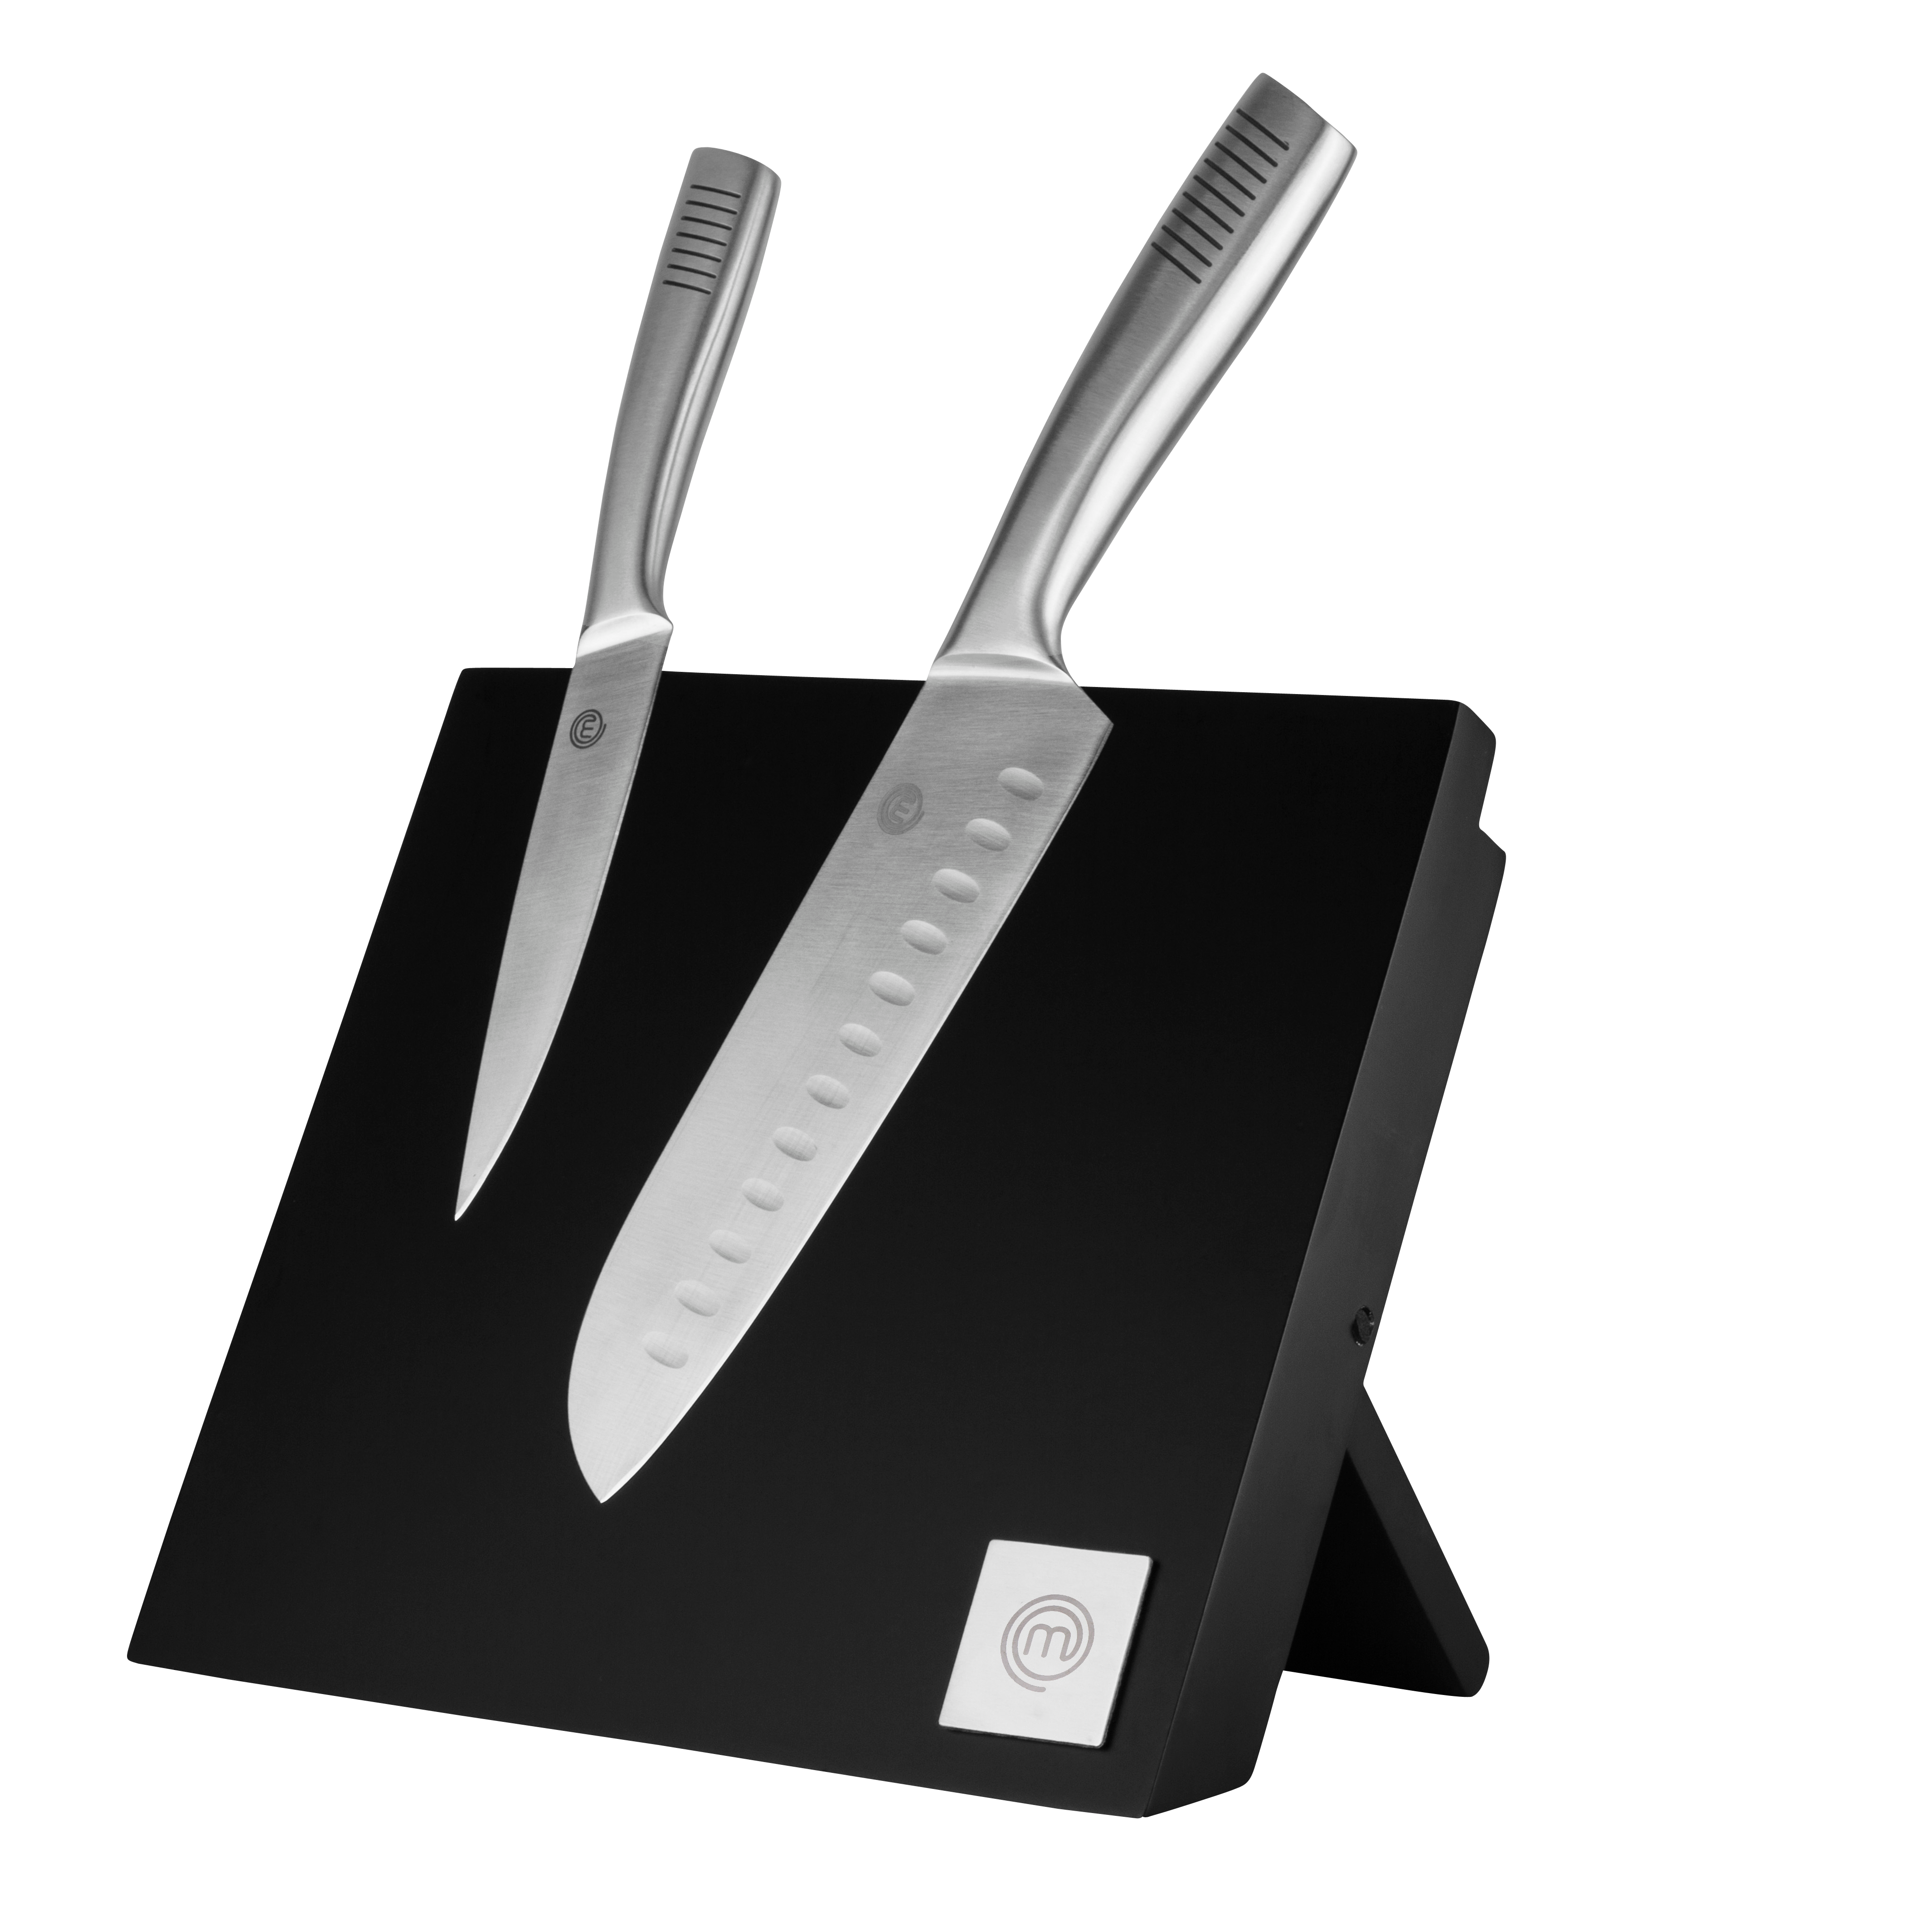 Bloc couteau magnétique Master Class 5 couteaux - Kitchen Craft - MaSpatule